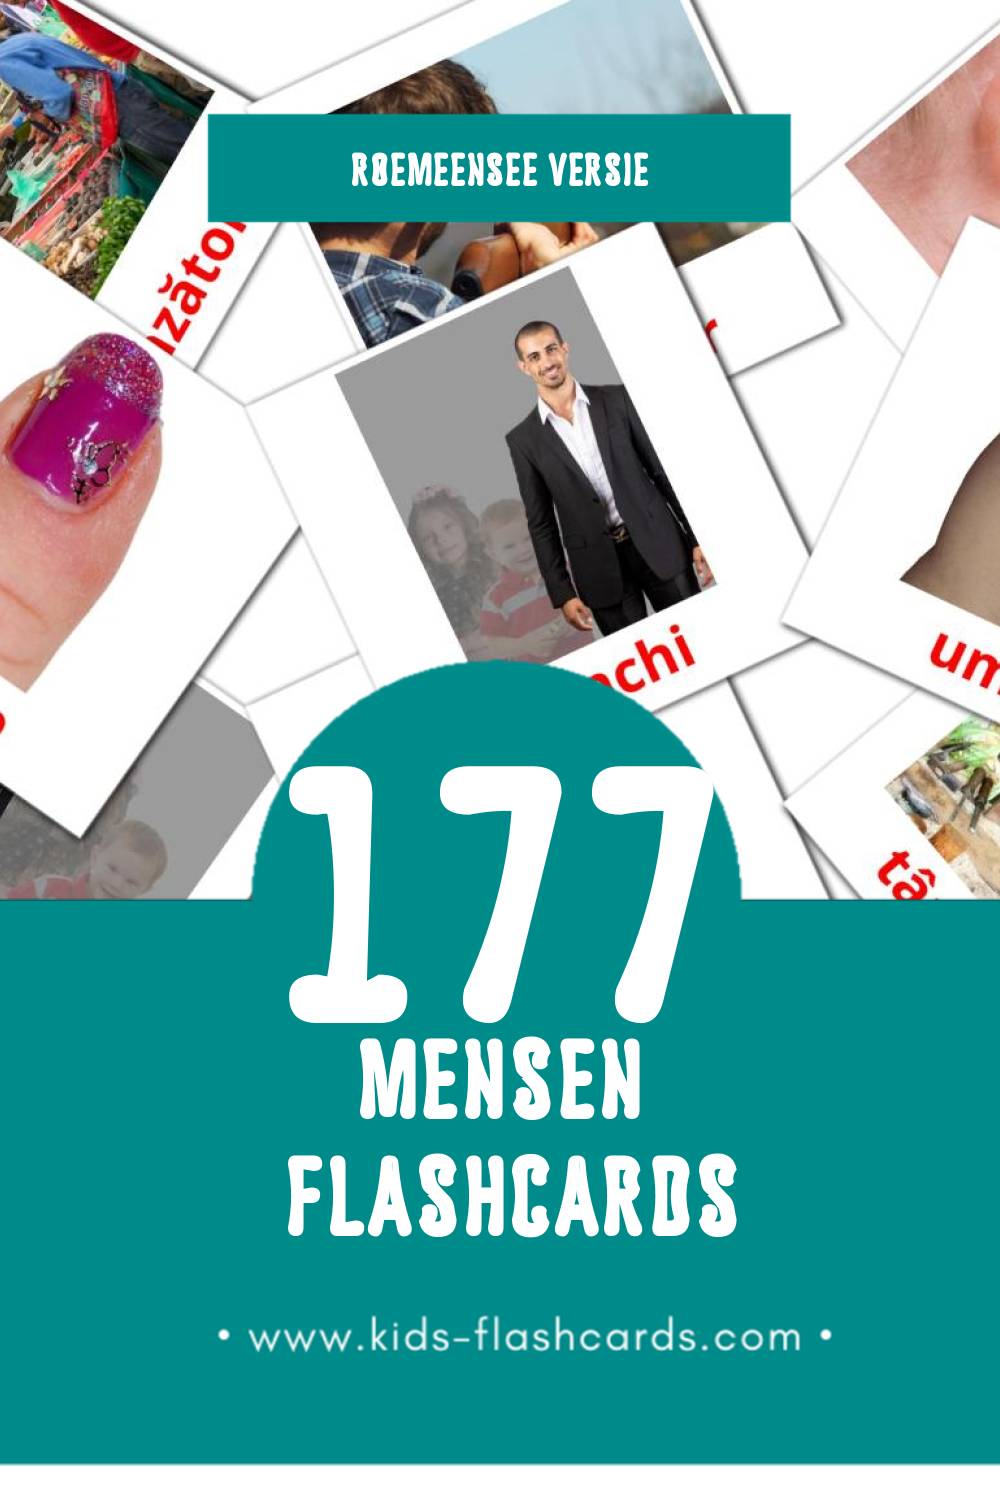 Visuele Oameni Flashcards voor Kleuters (177 kaarten in het Roemeense)